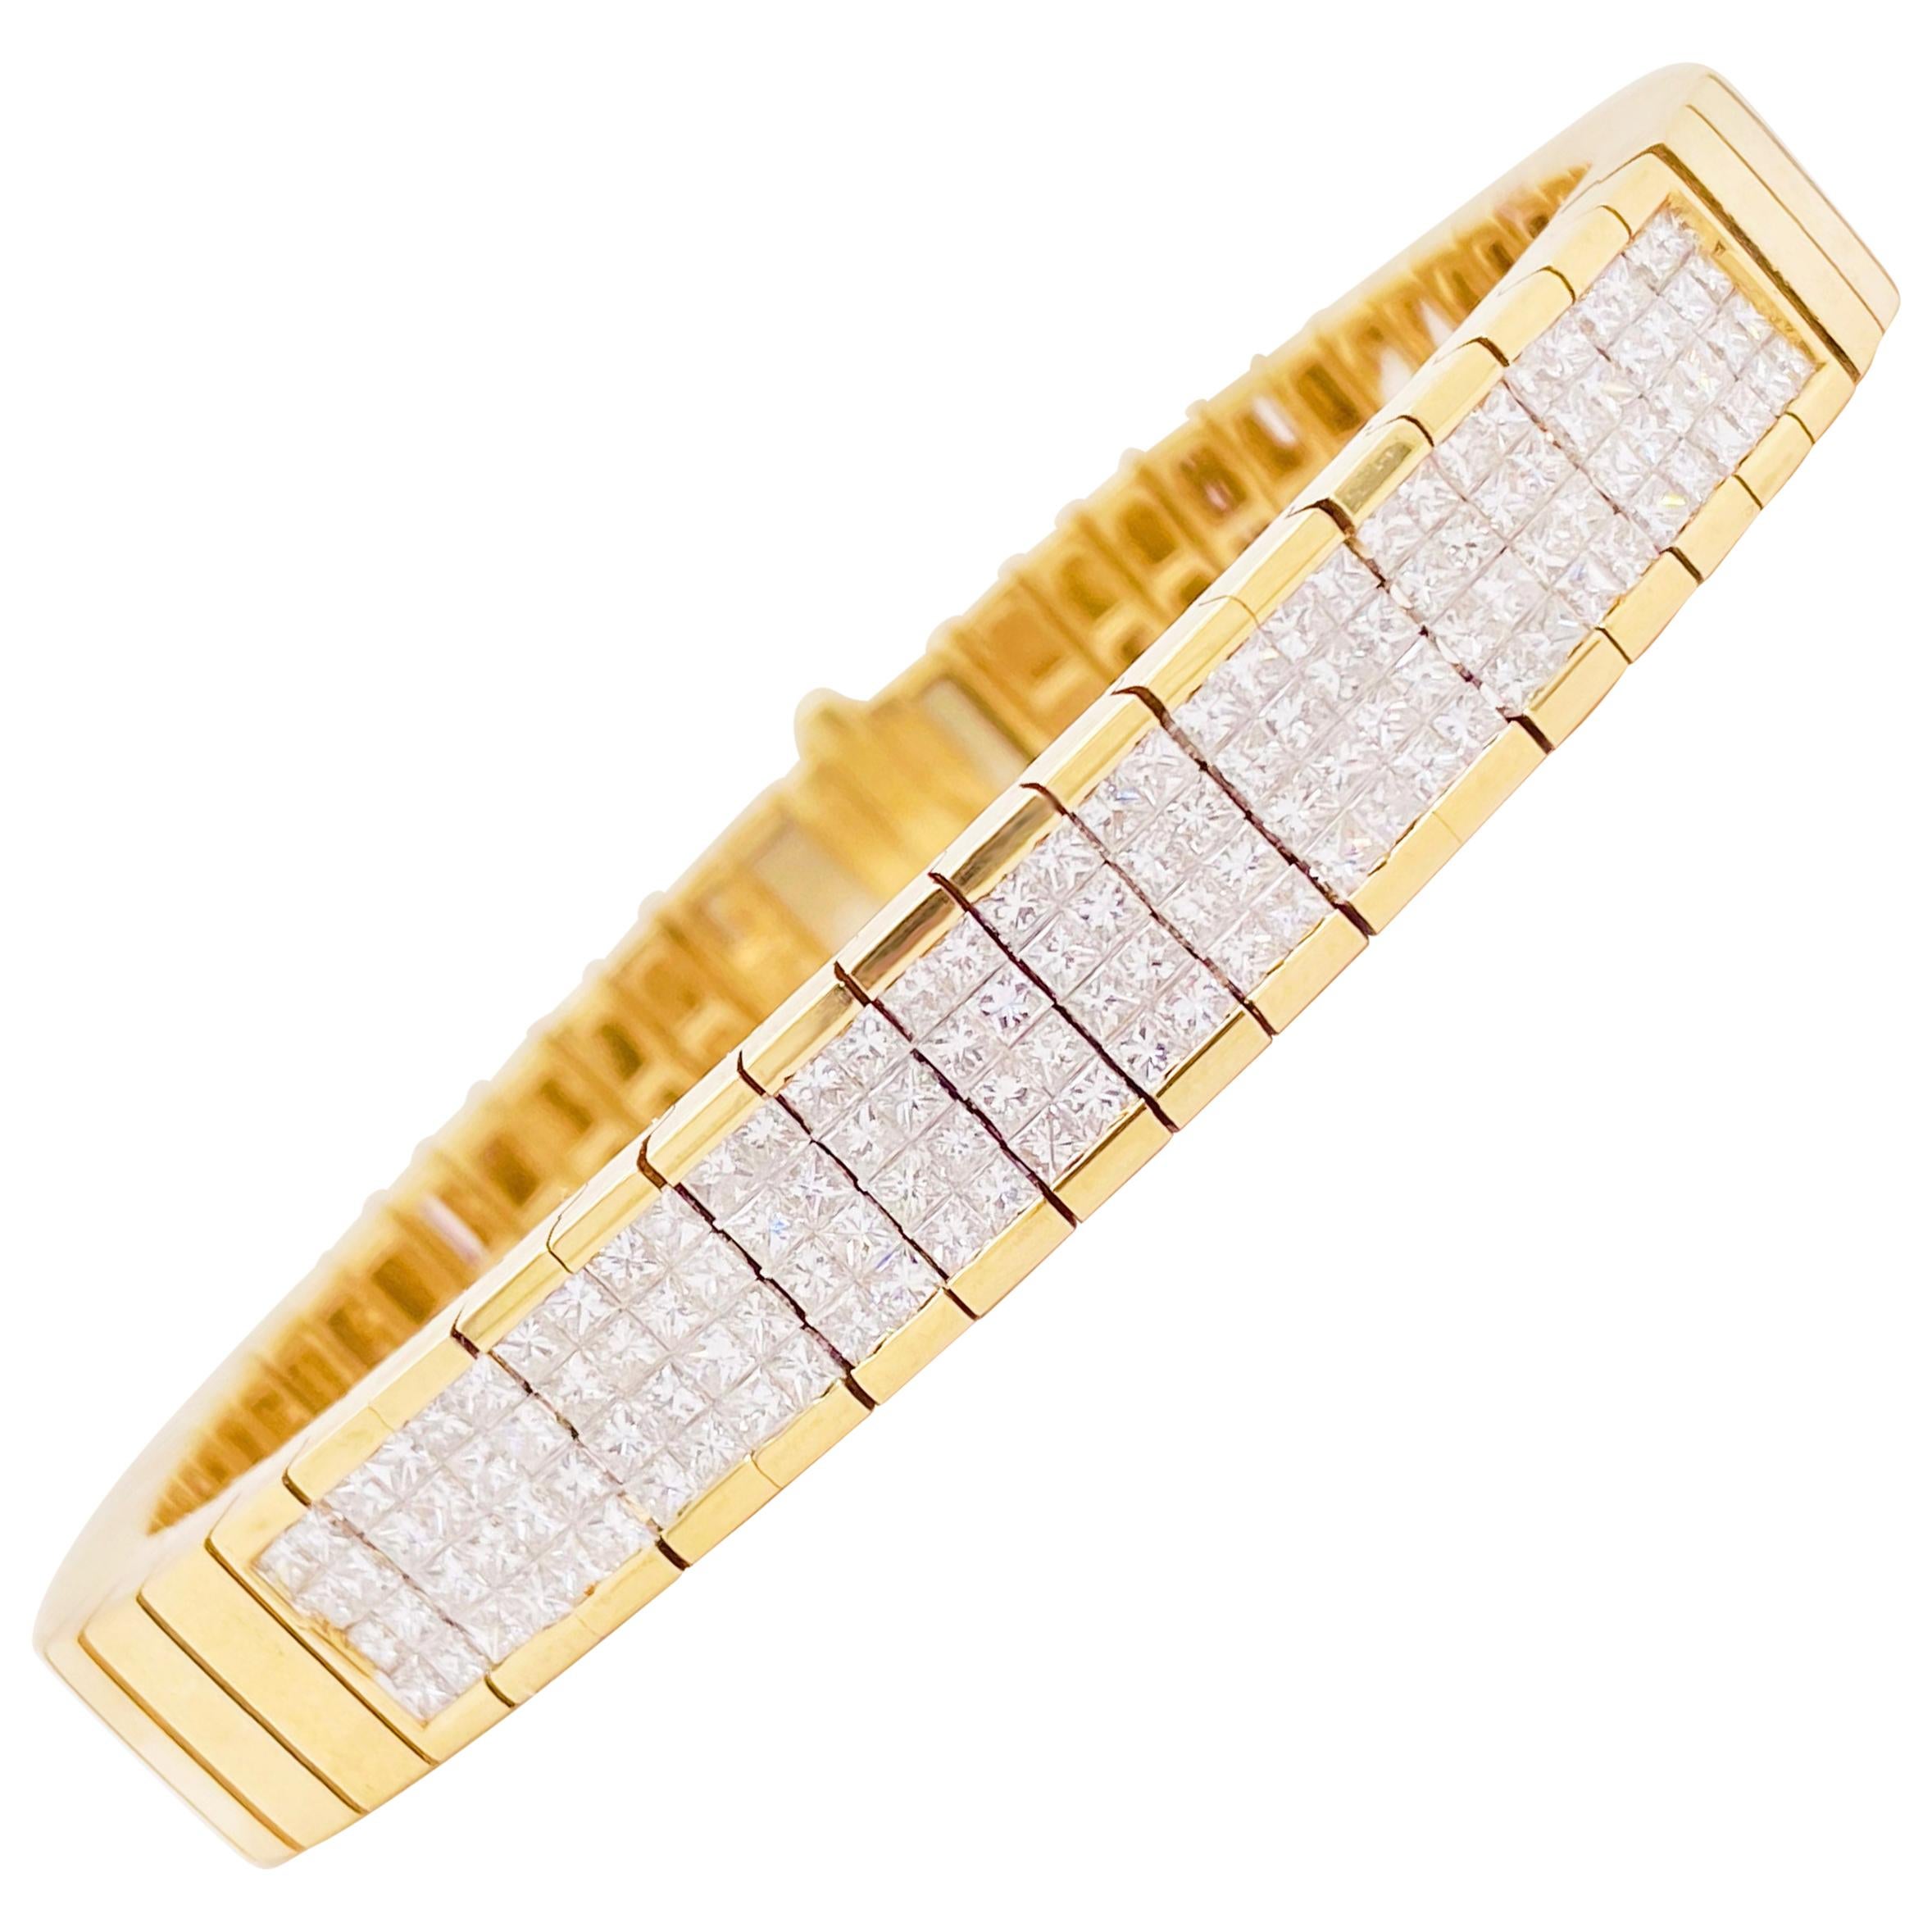 Bracelet en or pavé de diamants taille princesse 4 carats, poids total 4,00 carats Dia